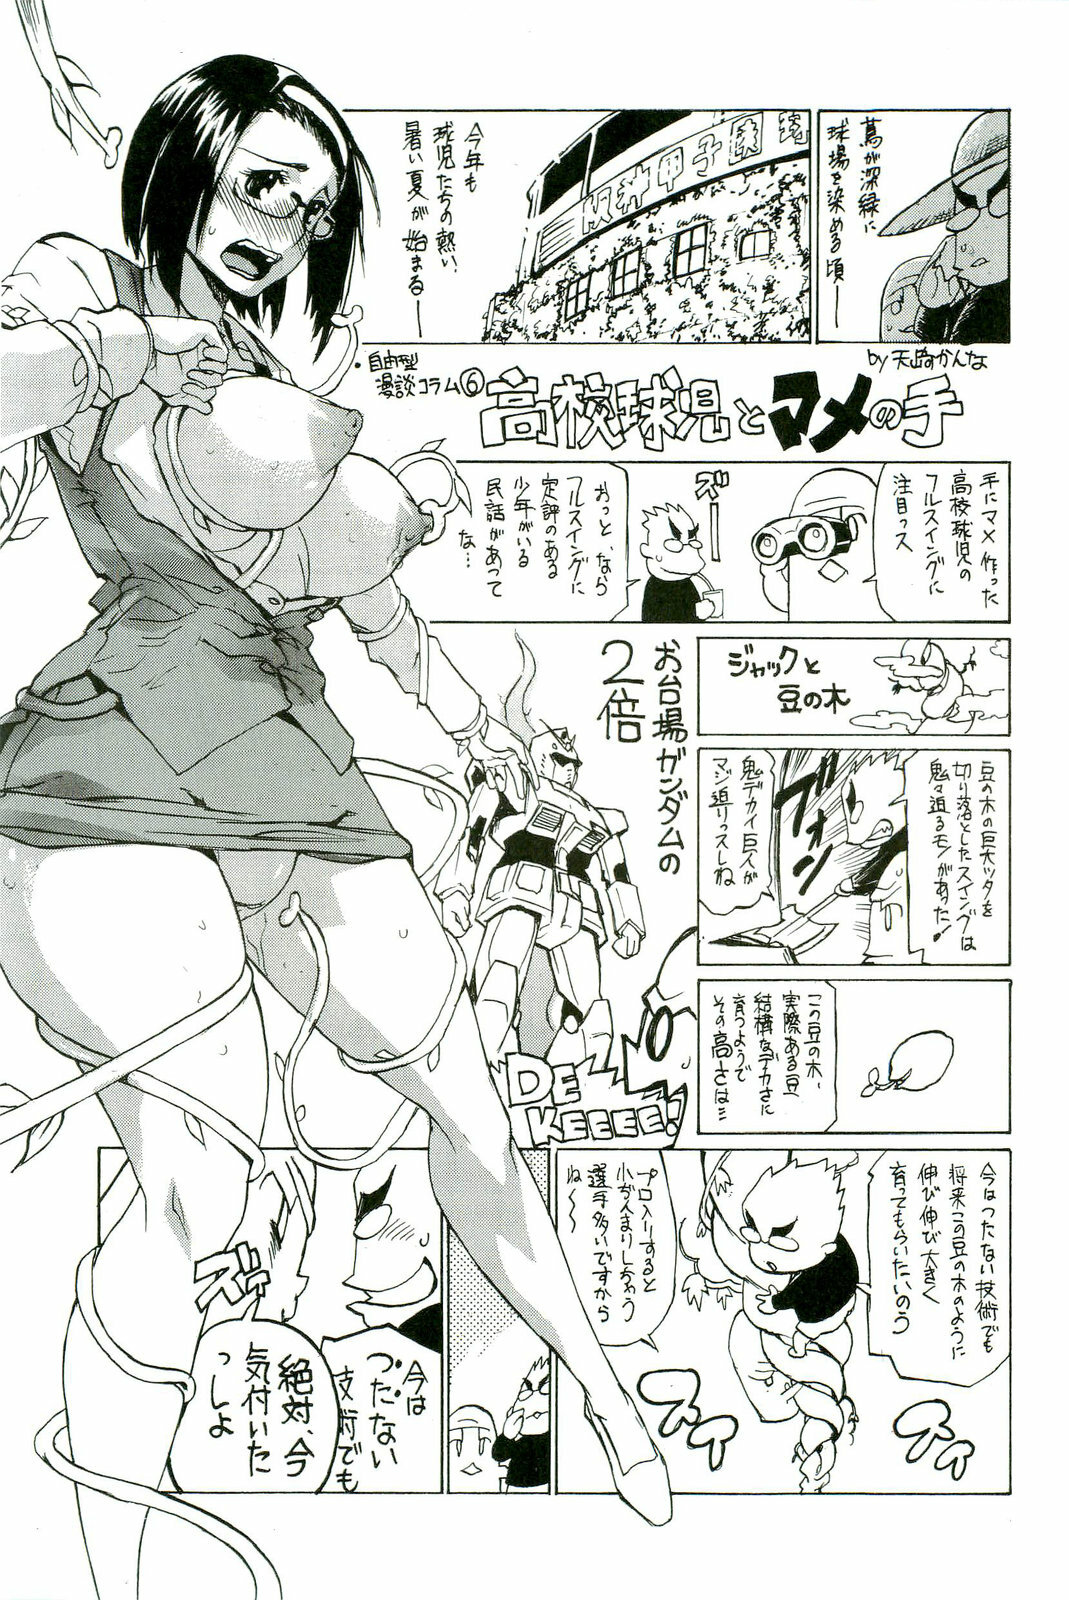 [Anthology] Shokushu! Etsuraku no Utage 2 page 170 full